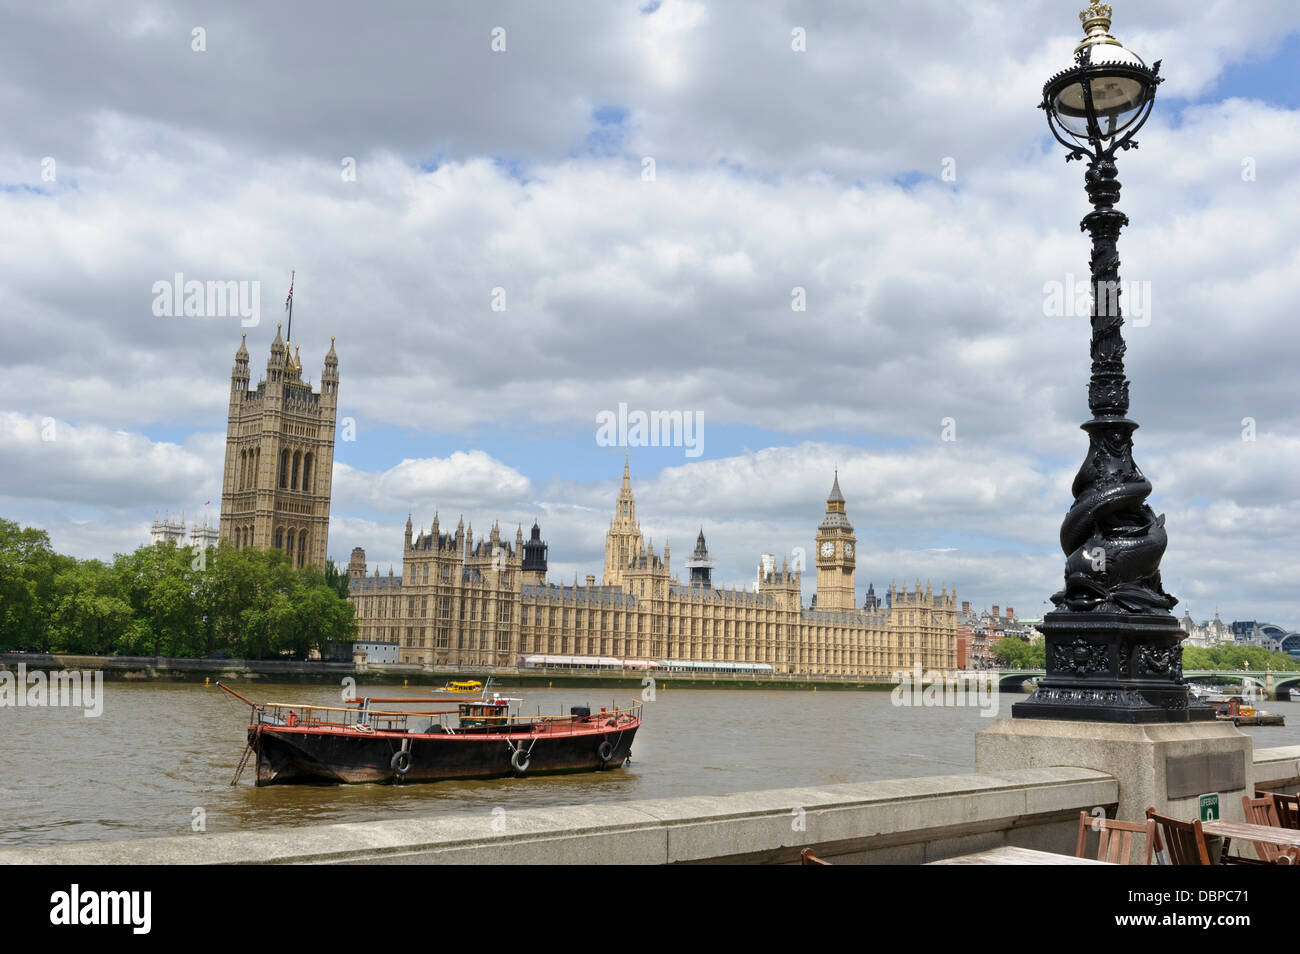 Palace of Westminster, London, England, United Kingdom. Stock Photo